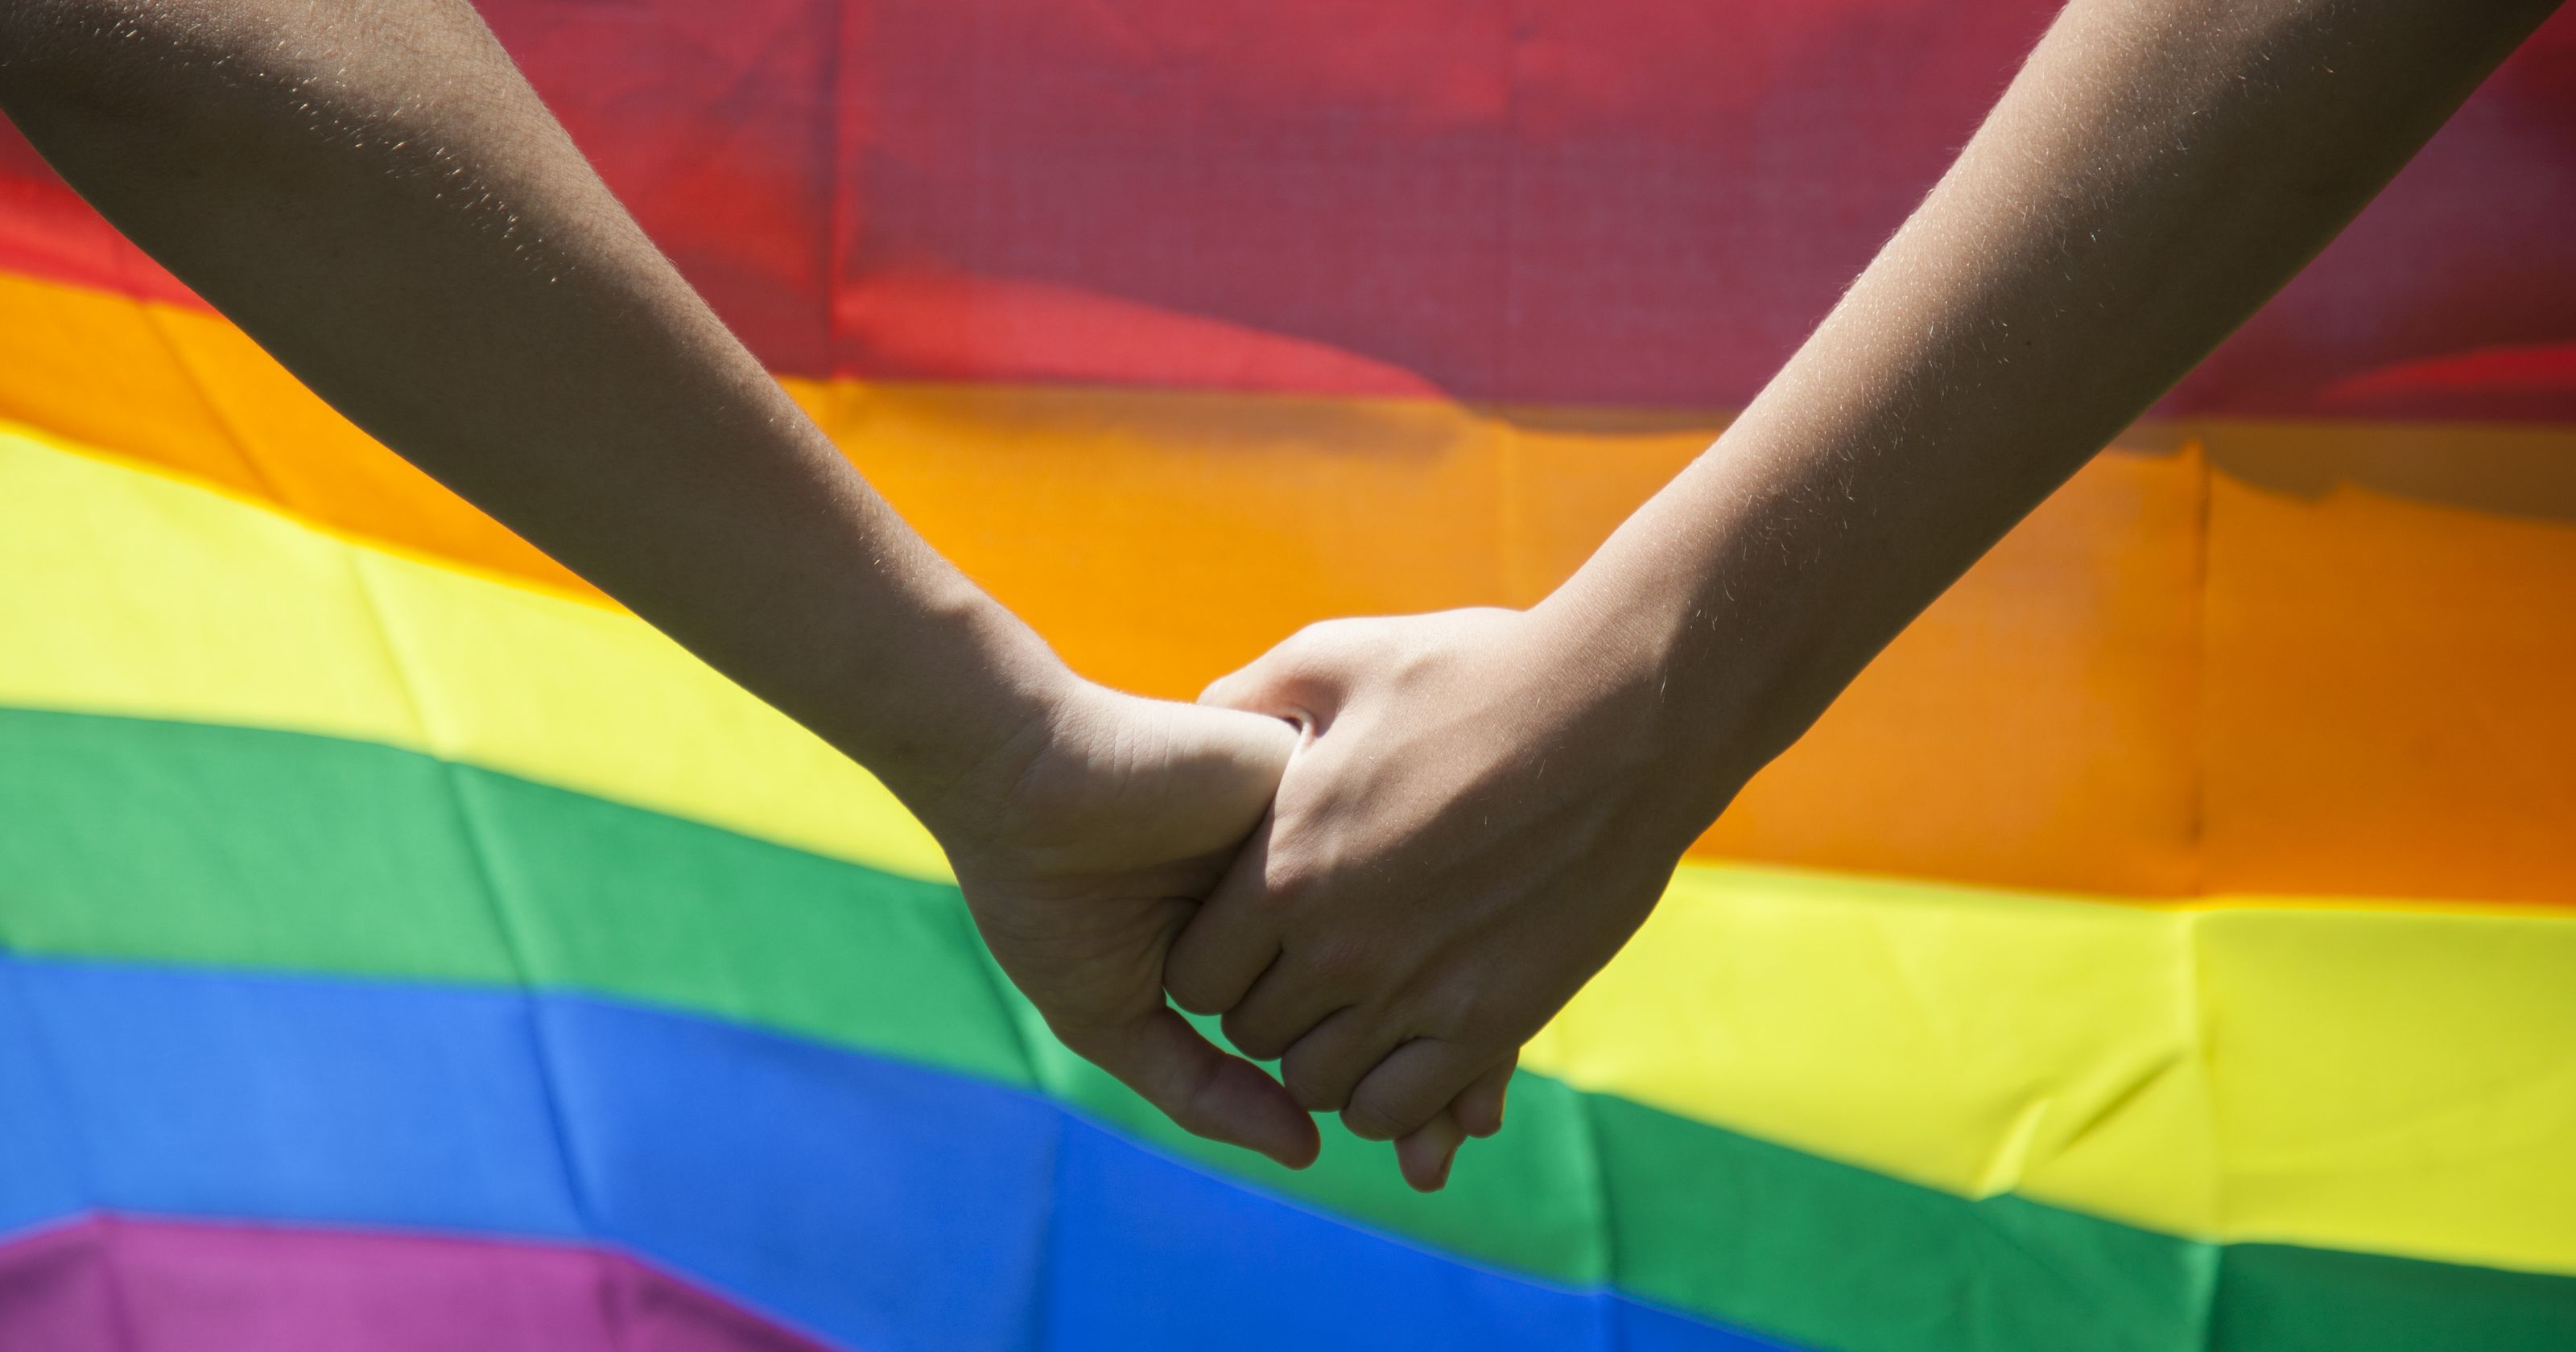 समलैंगिक अधिकारों के पक्ष में खड़े लोगों के लिए आई राहत भरी खबर 